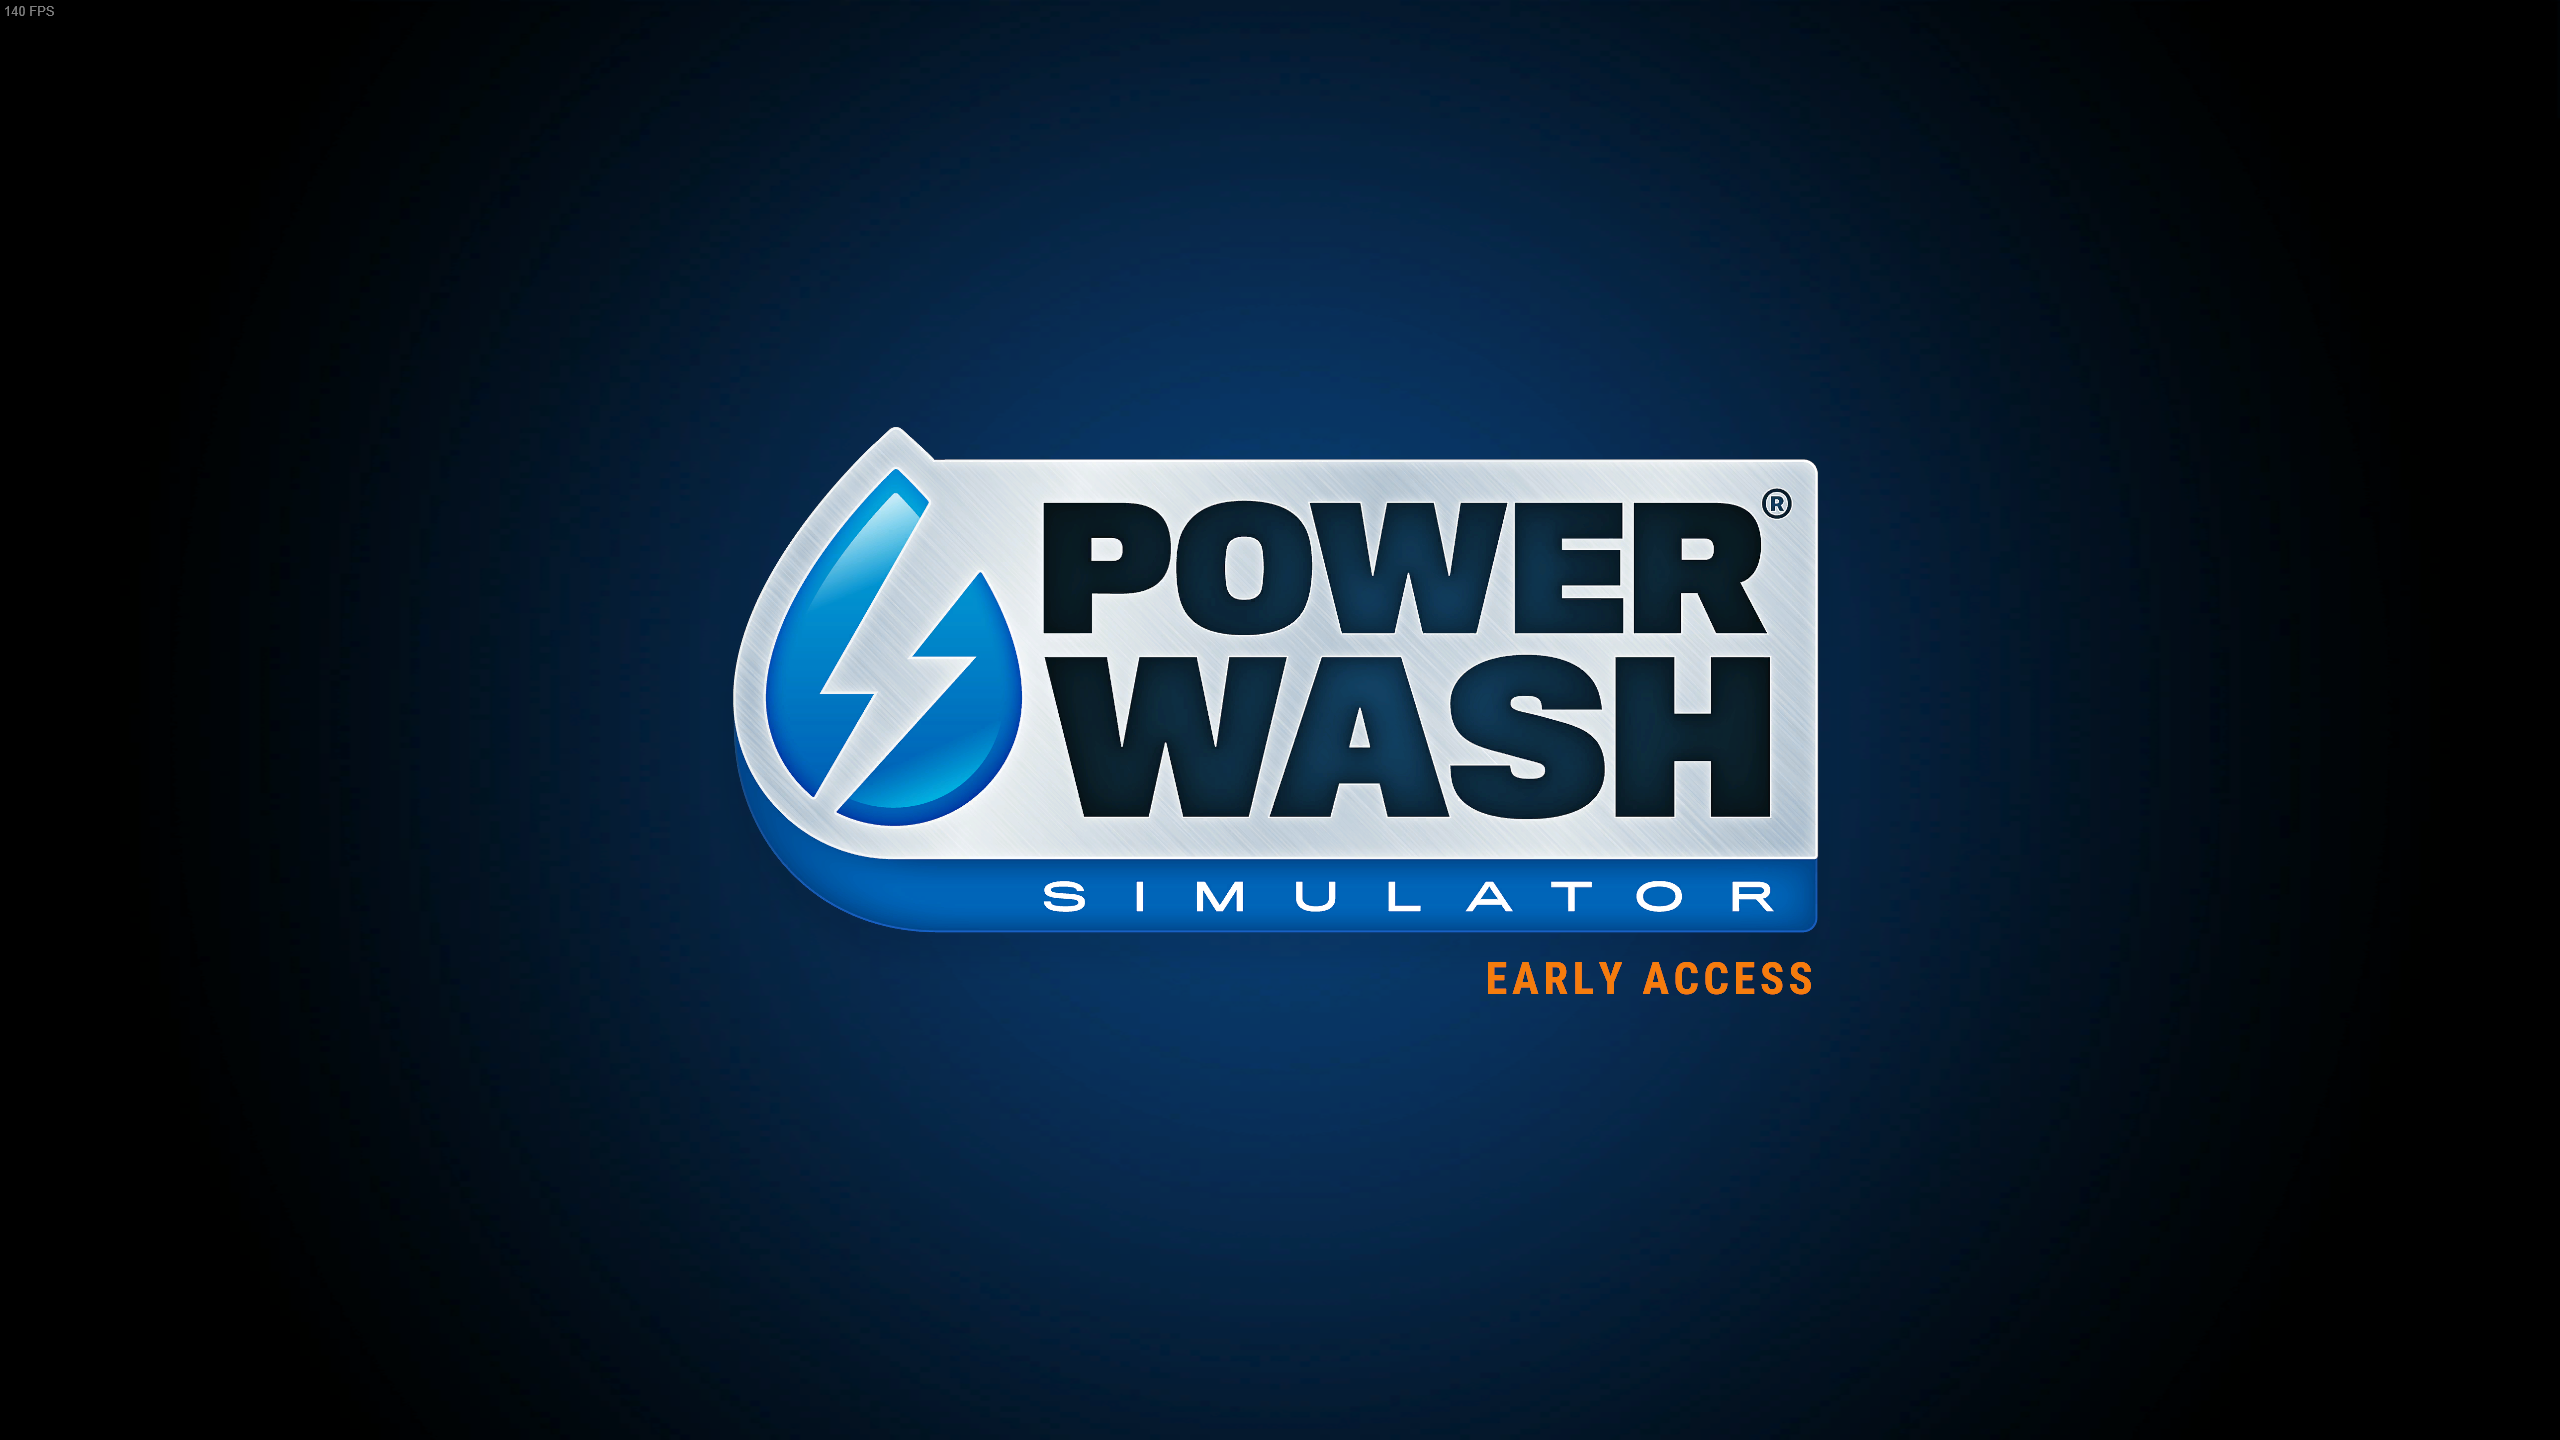 PowerWash Simulator Hits Hard on Switch